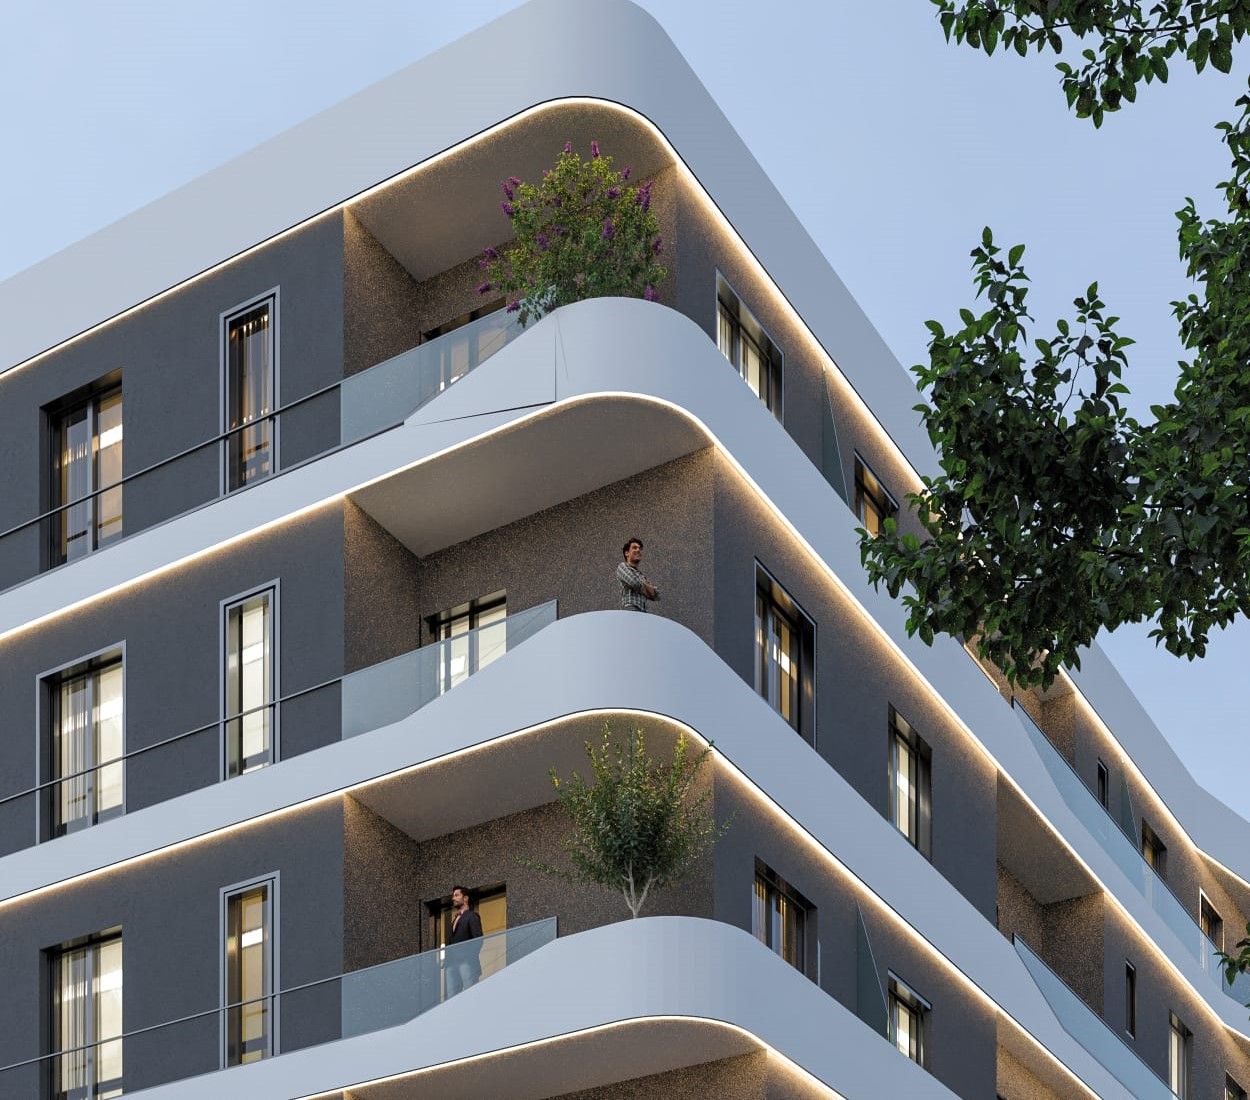 Продается квартира в Големе, Дуррес, Албания, в строящемся новом здании, недалеко от пляжа